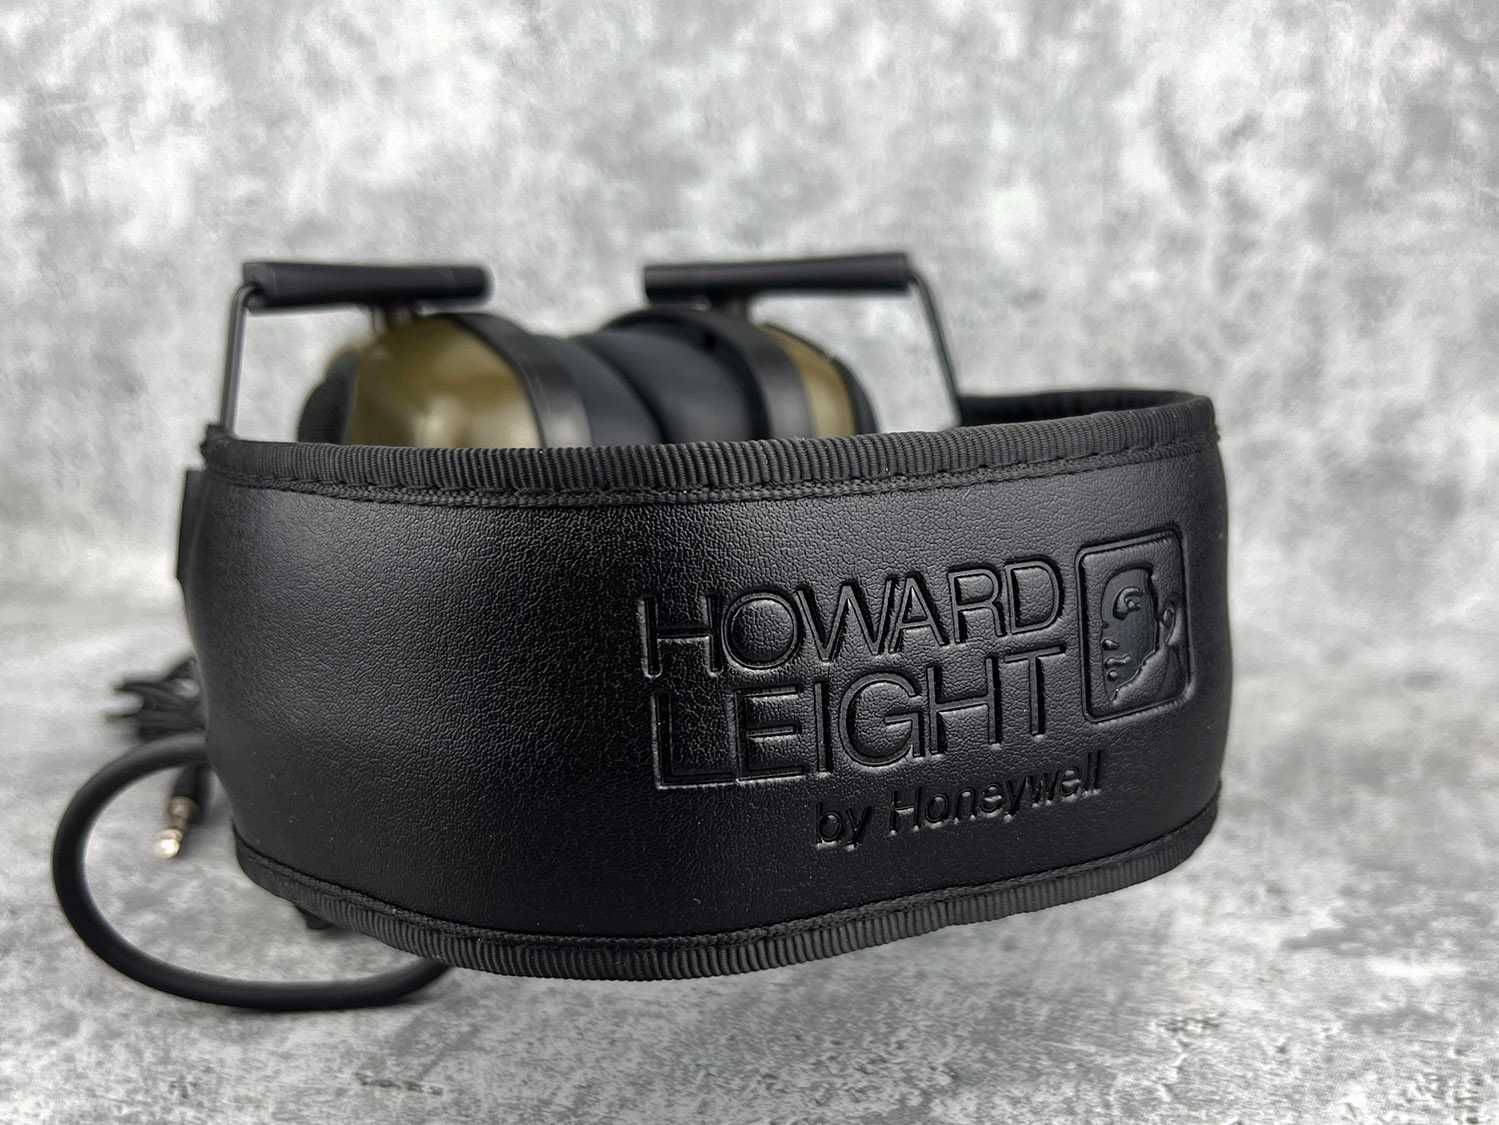 NOWE słuchawki aktywne Howard Leight ochronniki Impact Sport olive